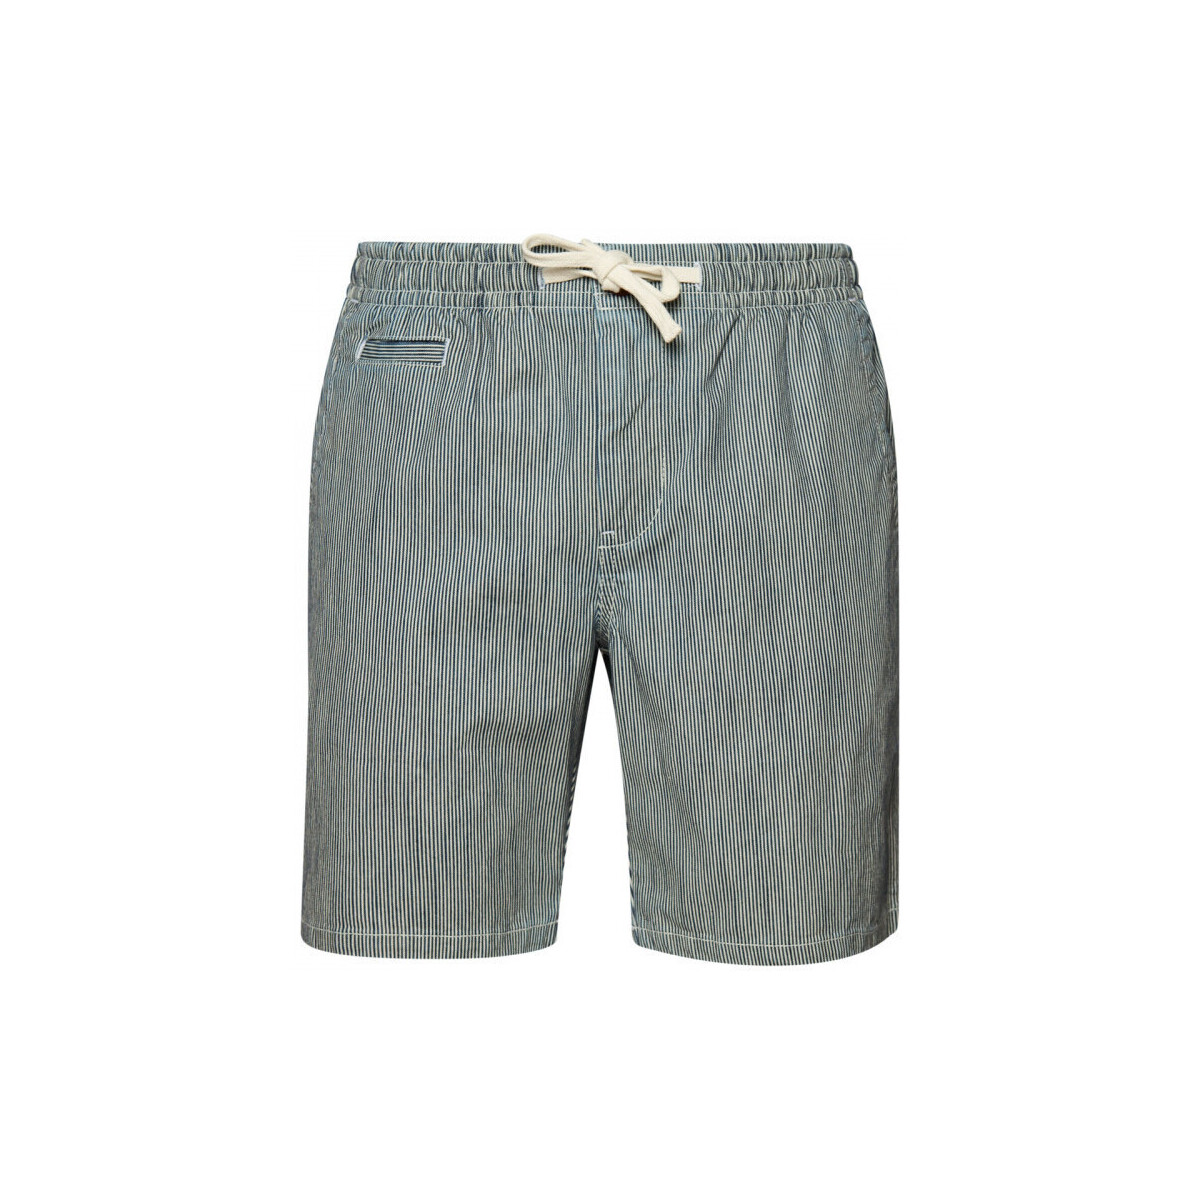 vaatteet Miehet Shortsit / Bermuda-shortsit Superdry Vintage overdyed Sininen